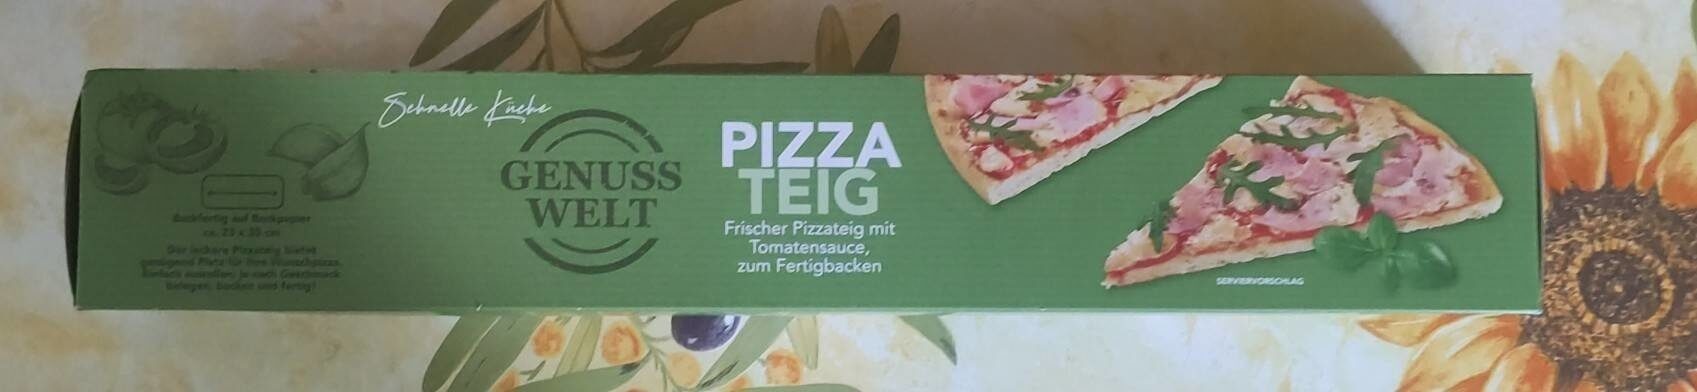 pizza Teig - Produkt